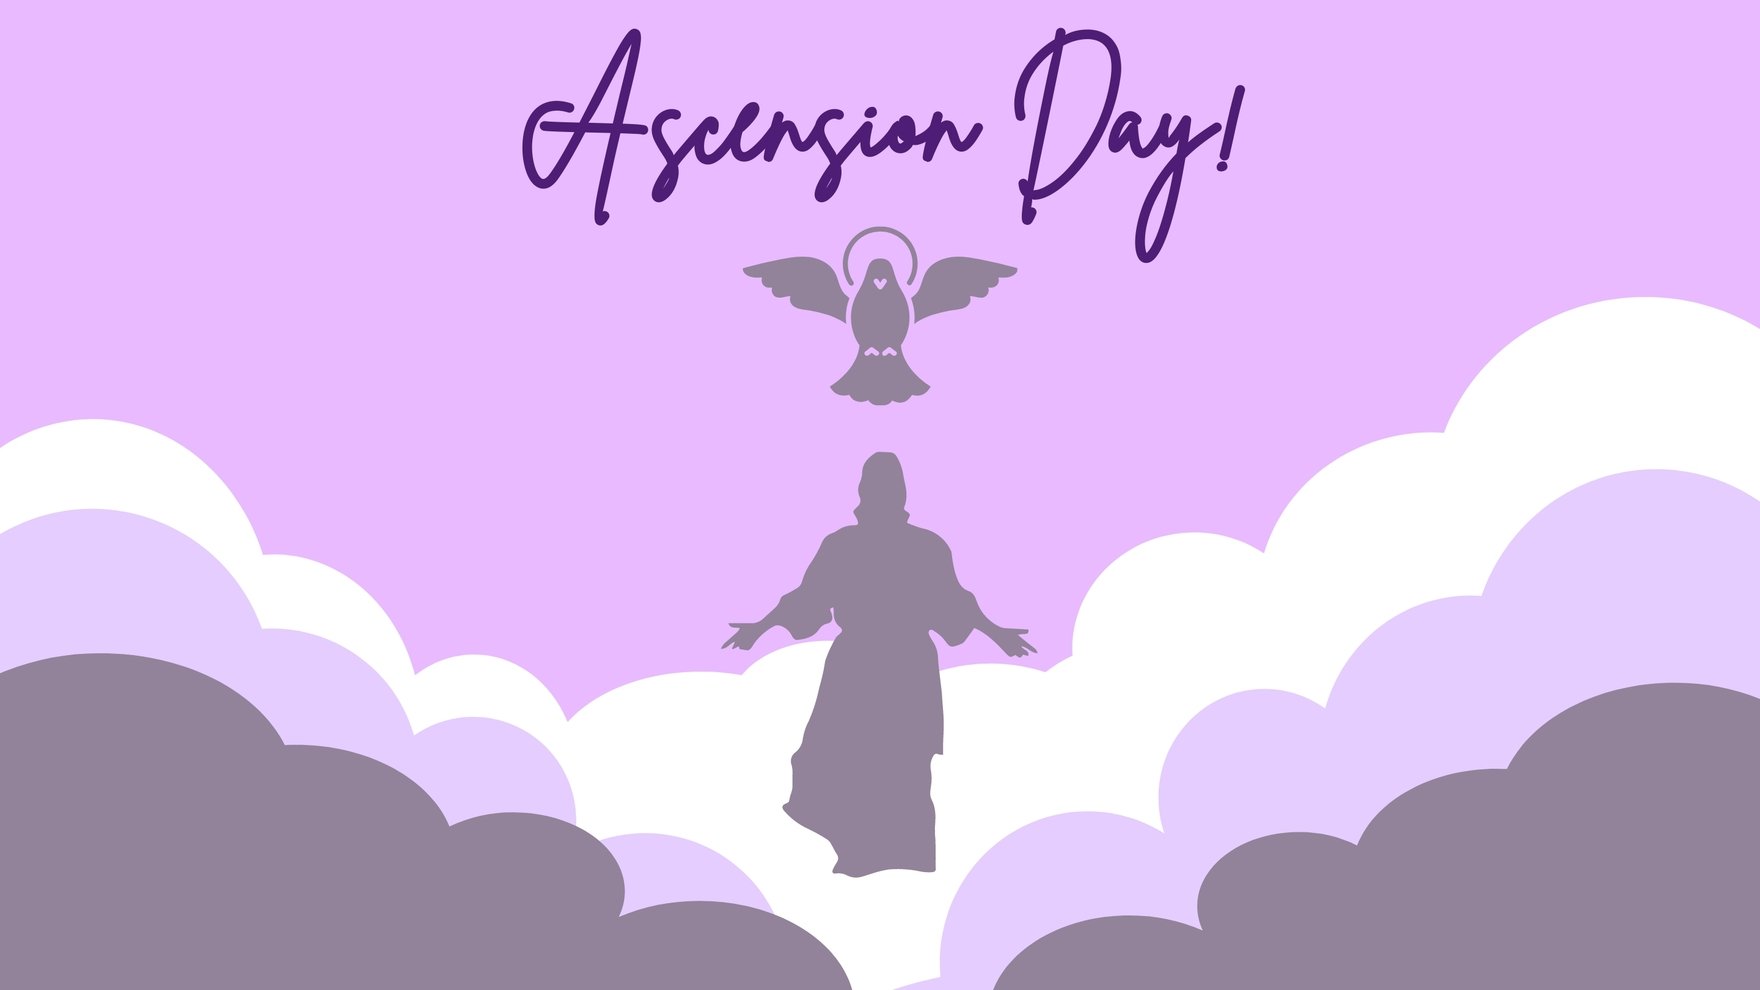 Free Ascension Day Banner Background in PDF, Illustrator, PSD, EPS, SVG, JPG, PNG